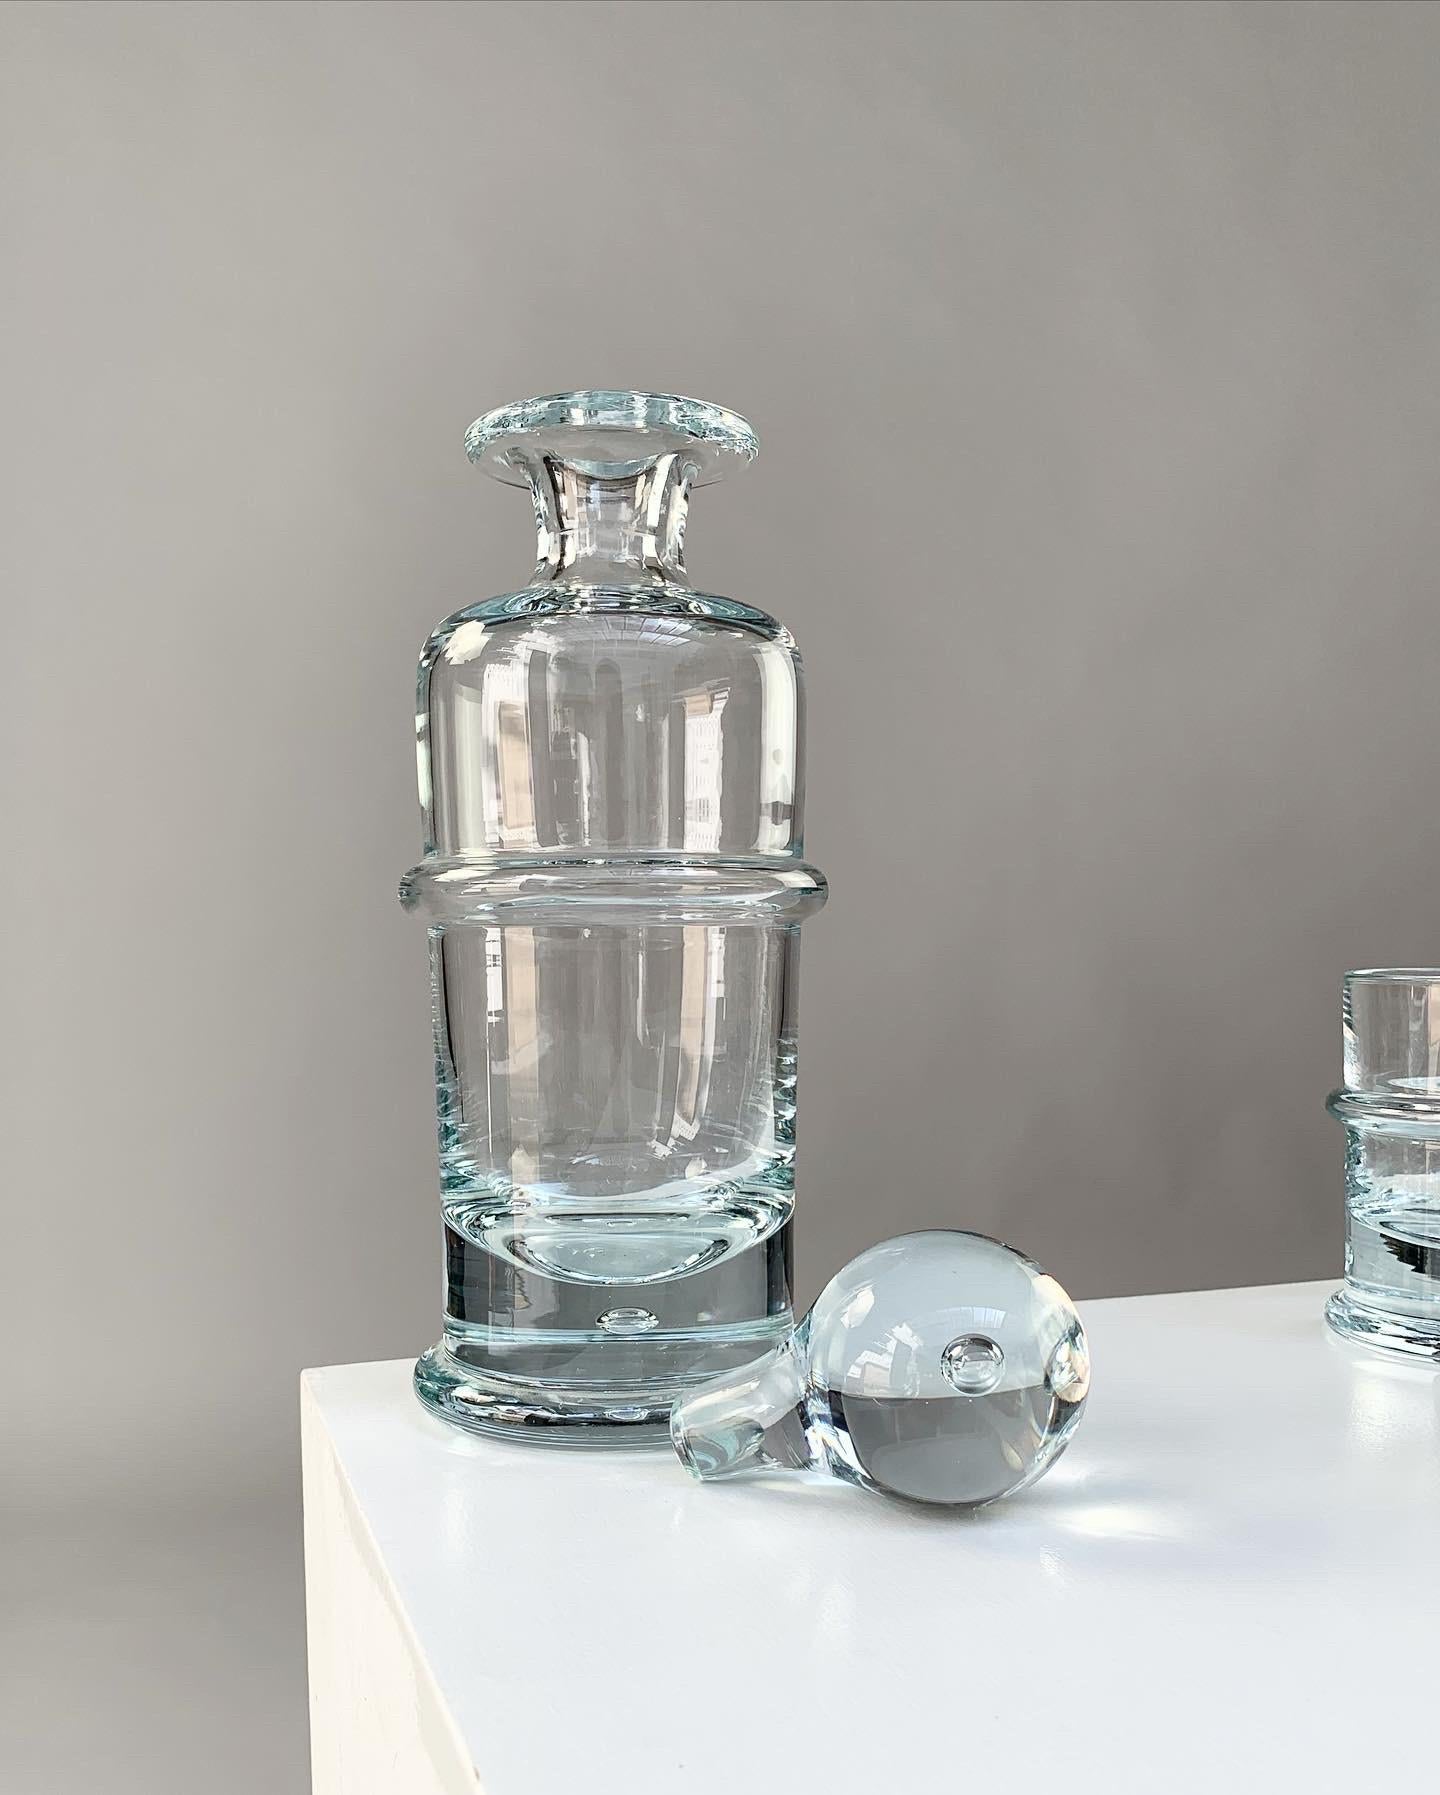 Hand-Crafted Holmegaard Crystal Glass Decanter Bottle & Tumbler Glasses Regiment Sidse Werner